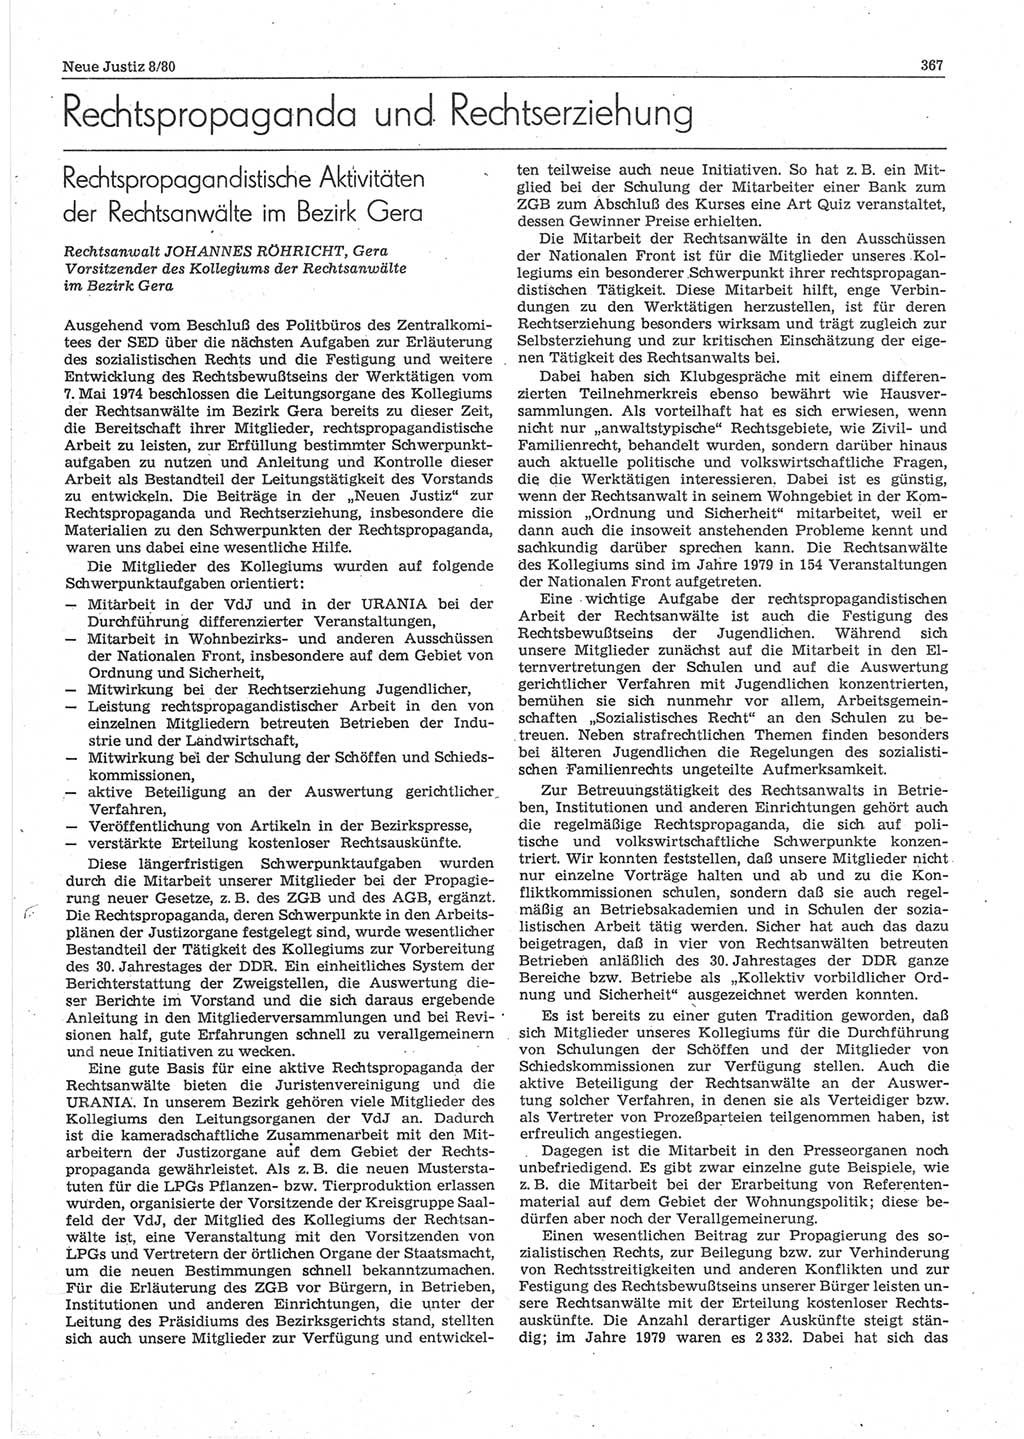 Neue Justiz (NJ), Zeitschrift für sozialistisches Recht und Gesetzlichkeit [Deutsche Demokratische Republik (DDR)], 34. Jahrgang 1980, Seite 367 (NJ DDR 1980, S. 367)